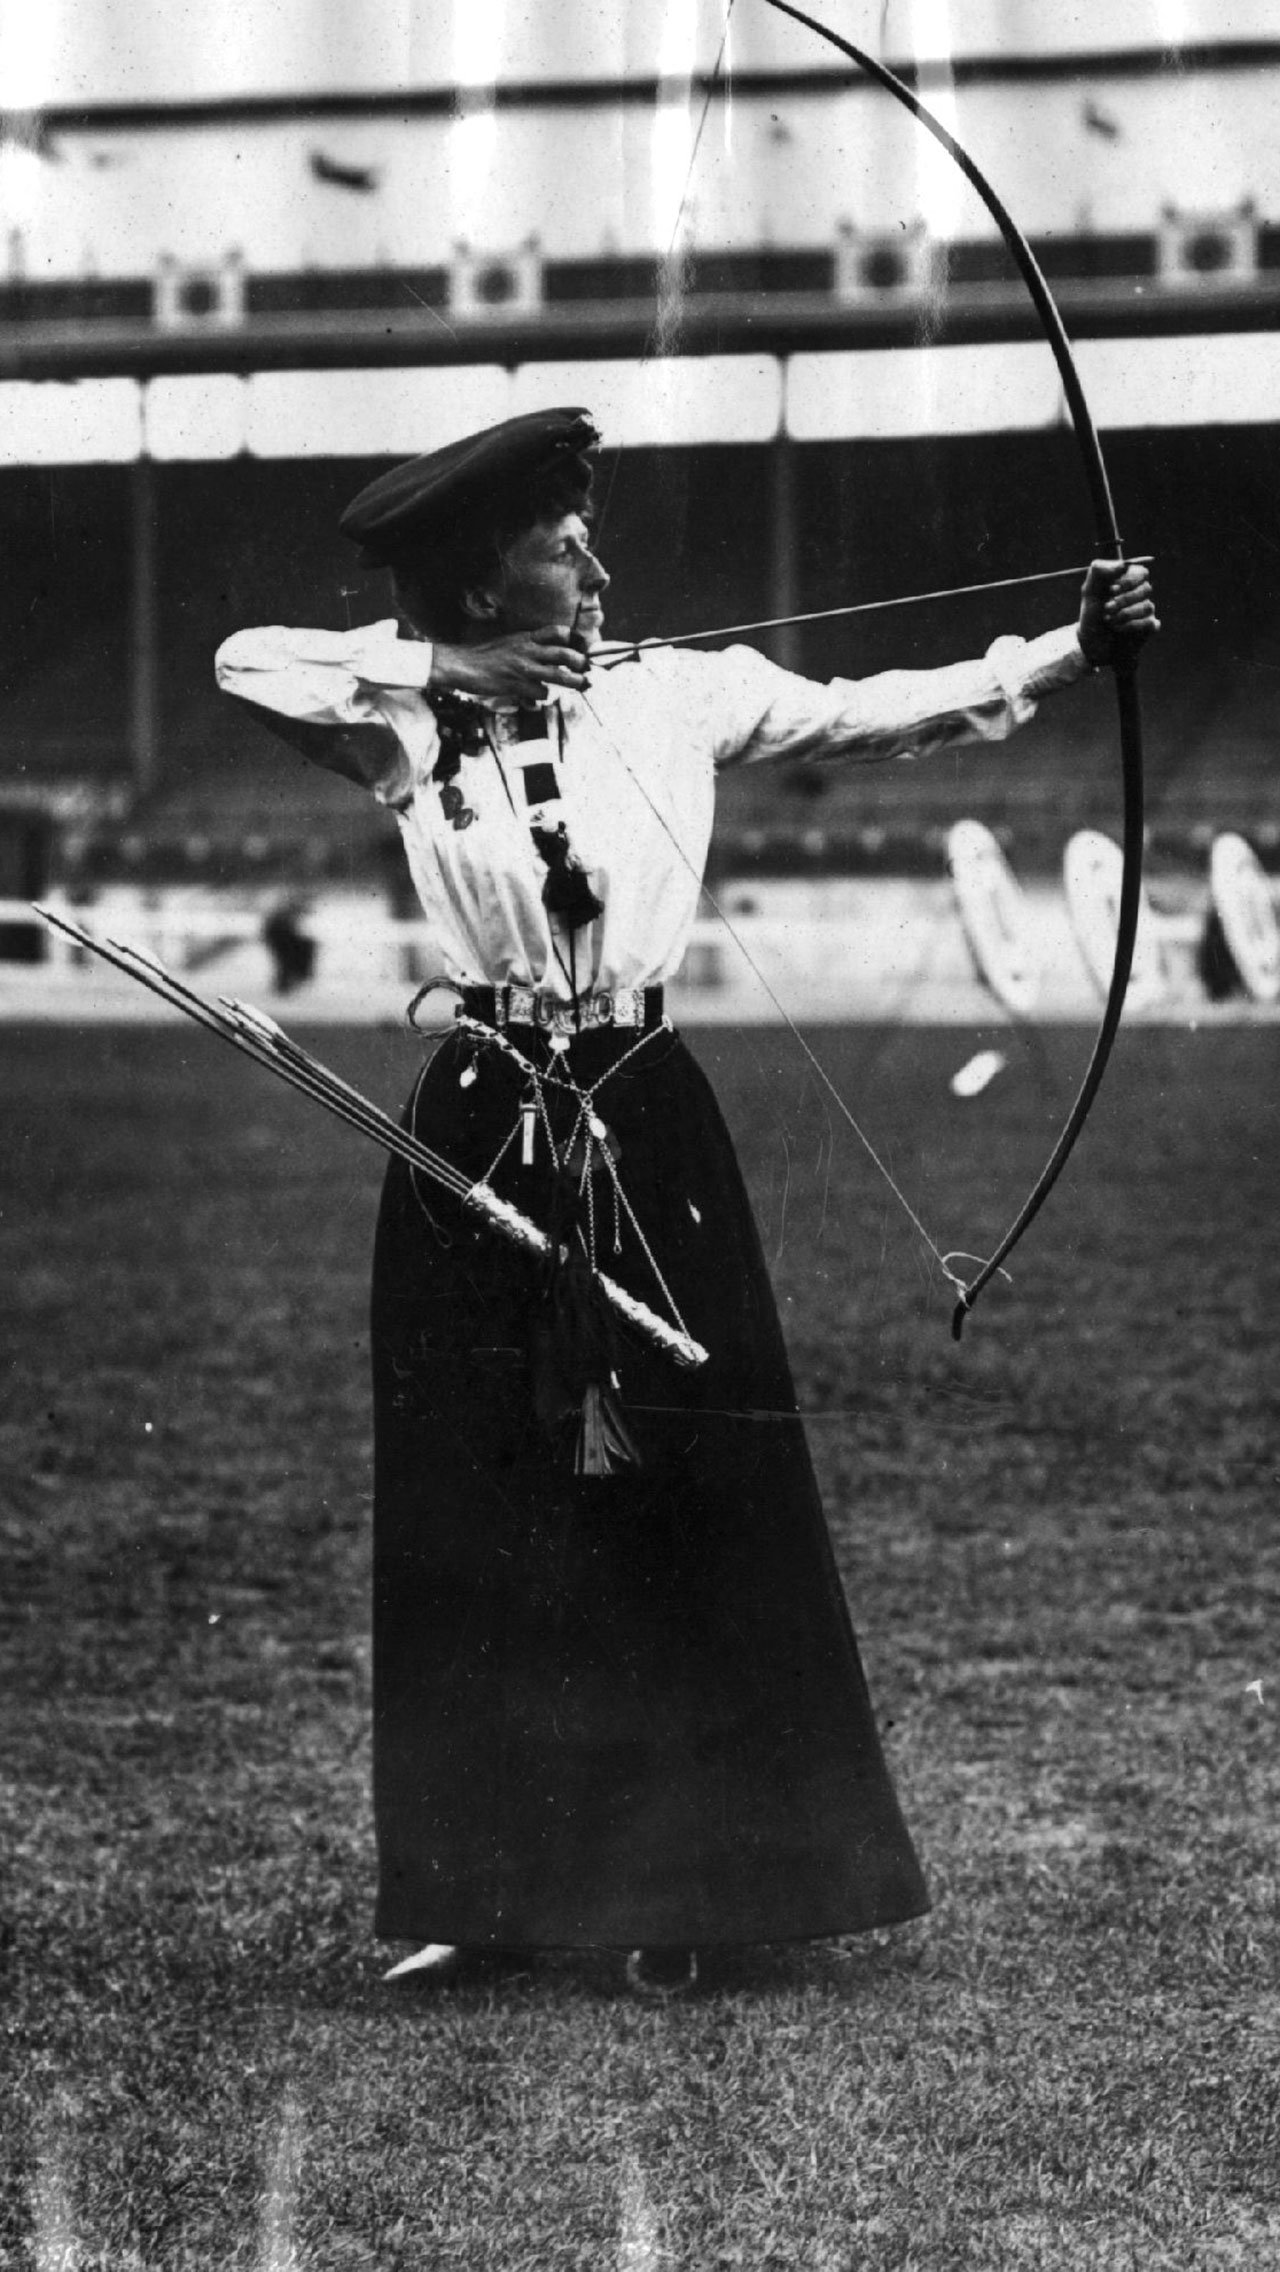 Соревнования на Олимпиаде-1900 в Париже длились 44 дня. Источники расходятся: то ли дисциплин было очень много, то ли участники соревнований стреляли утомительно долго.